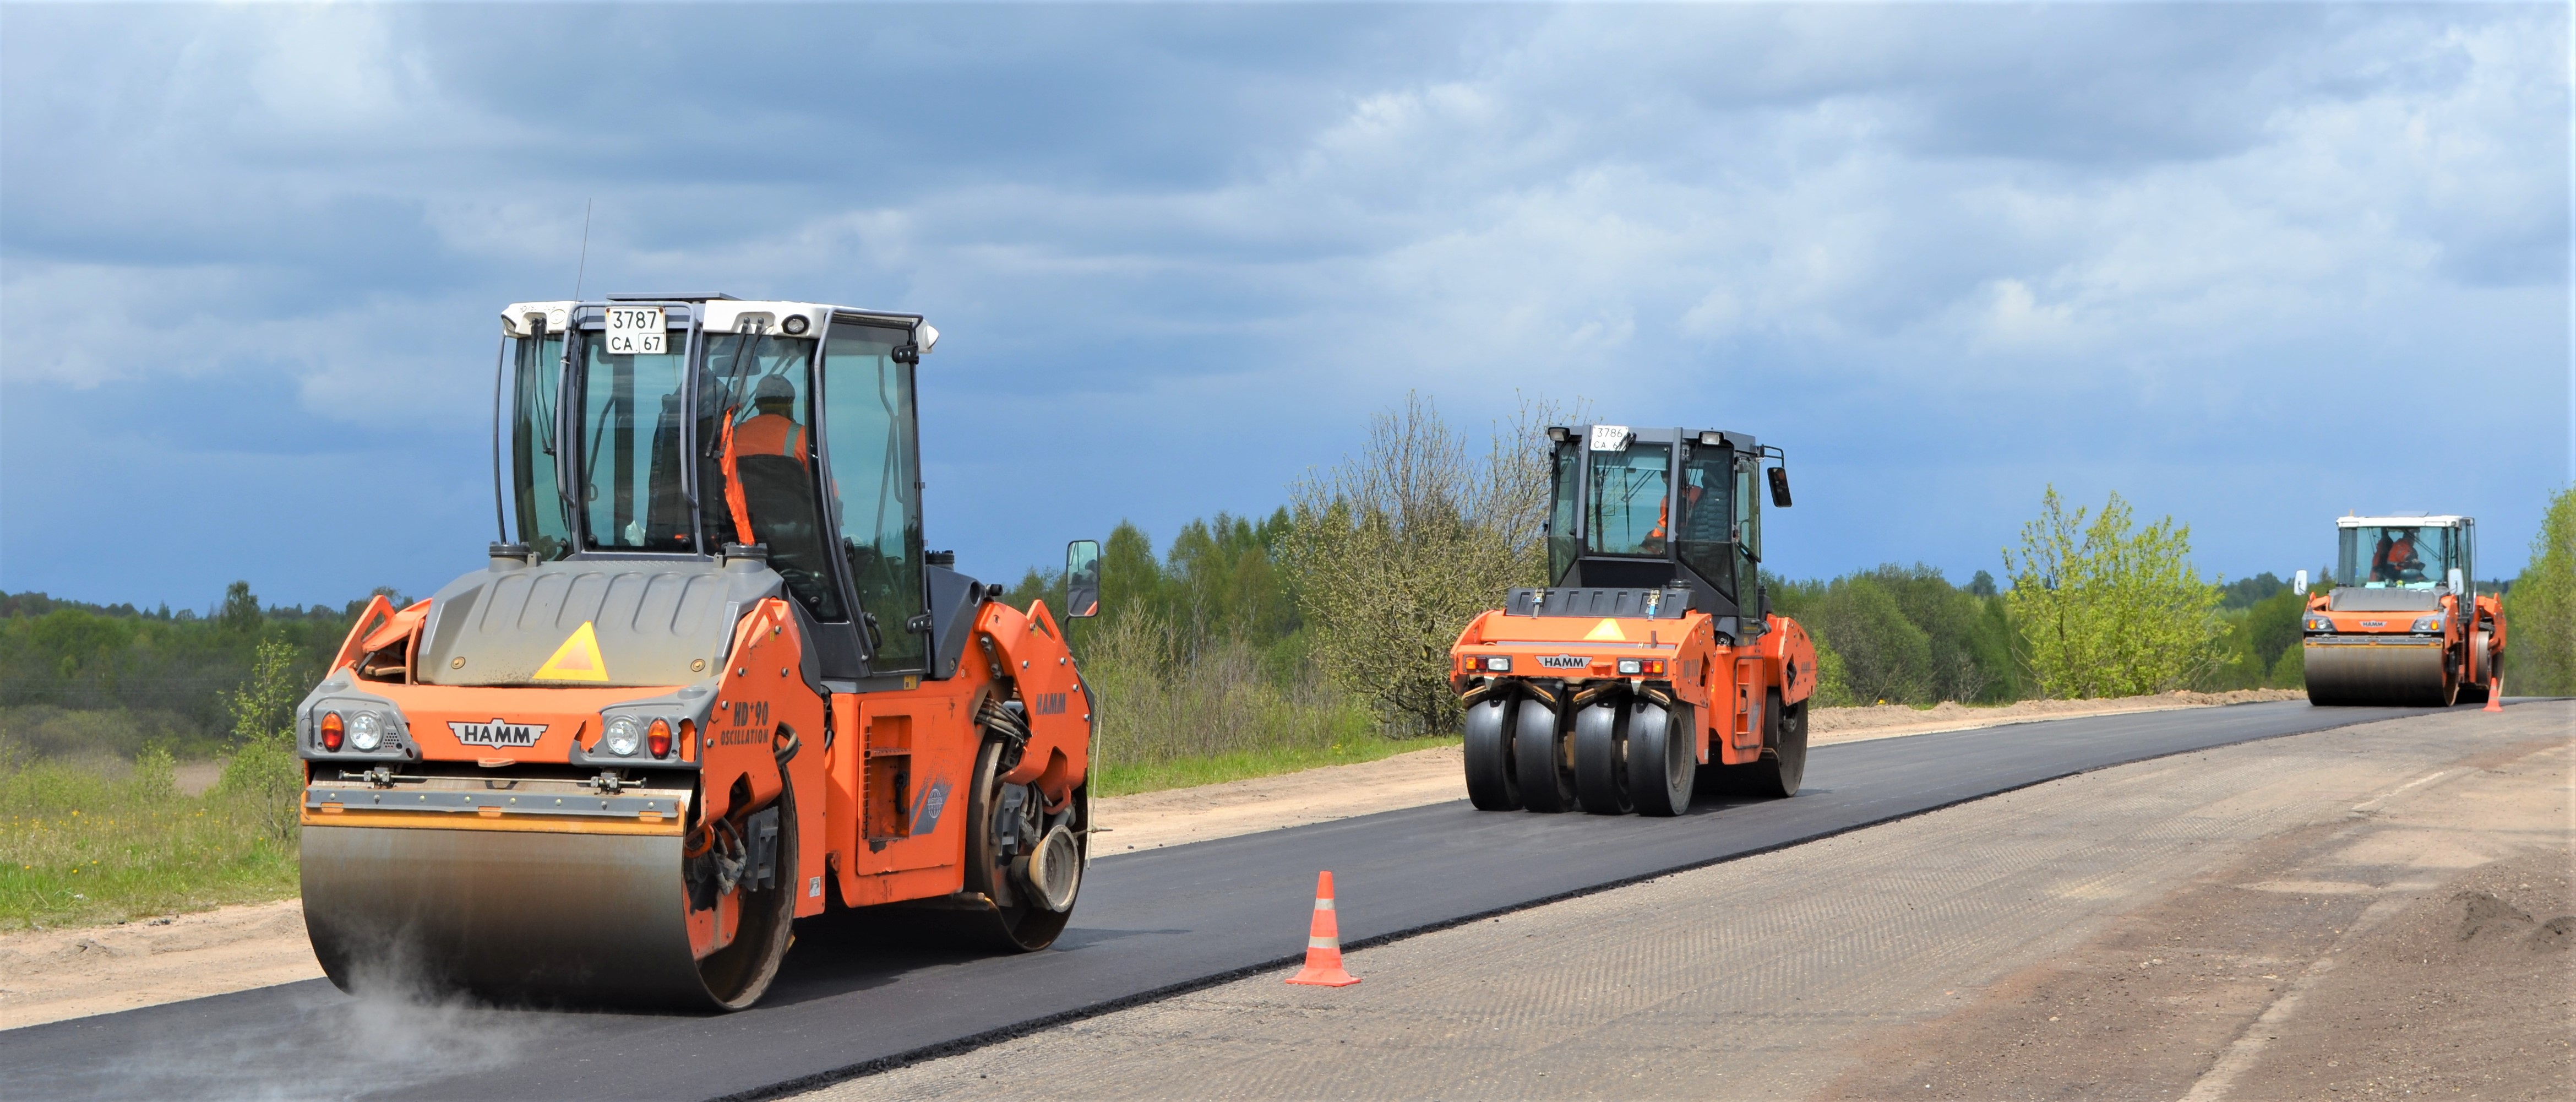 37 участков региональных дорог планируют отремонтировать в этом году в Смоленской области